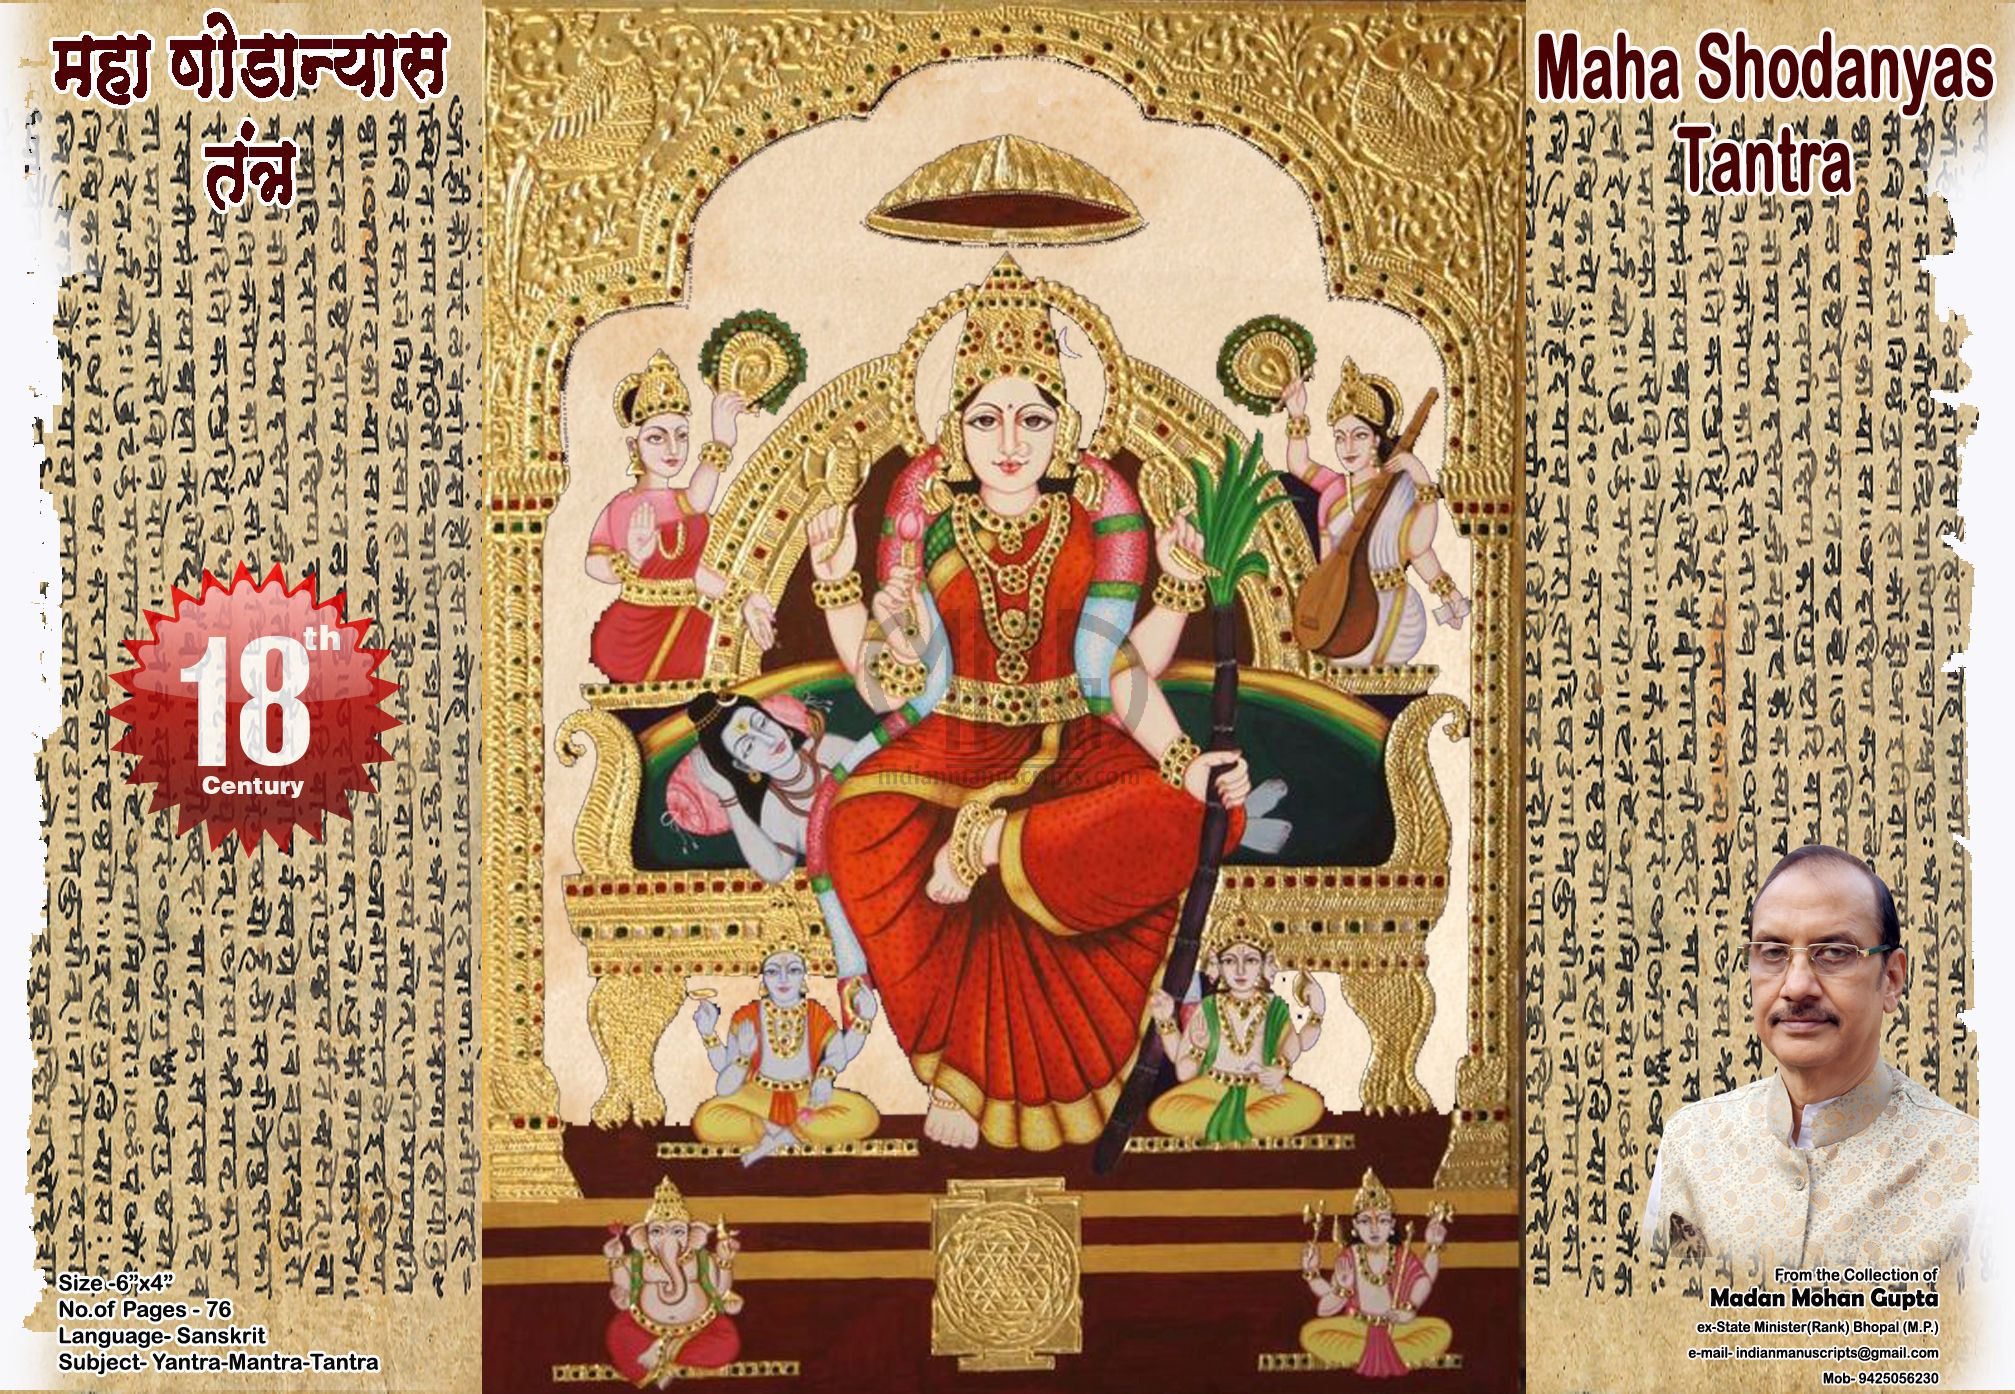 Maha Shodayas tantra